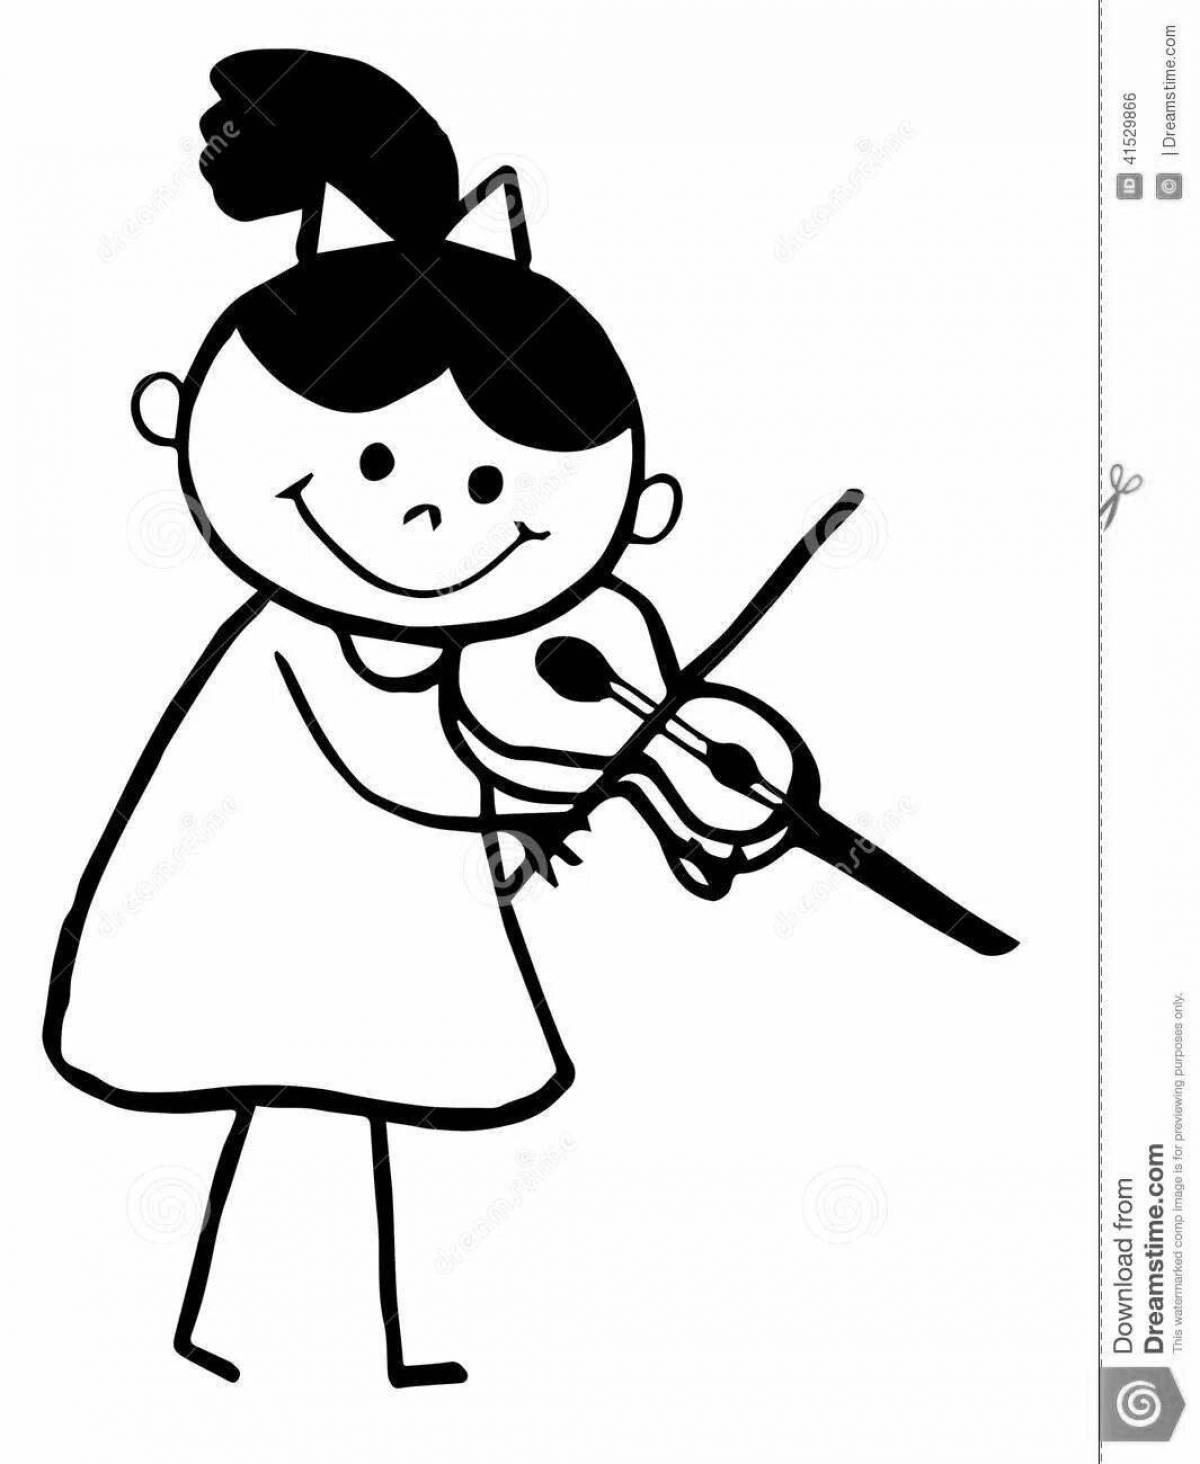 Delightful coloring boy with a violin